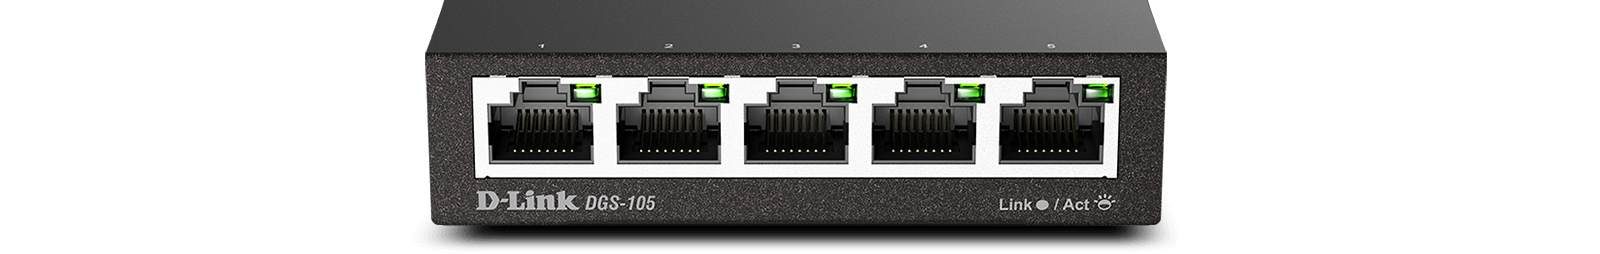 DGS-105 5-Port Gigabit Unmanaged Desktop Switch